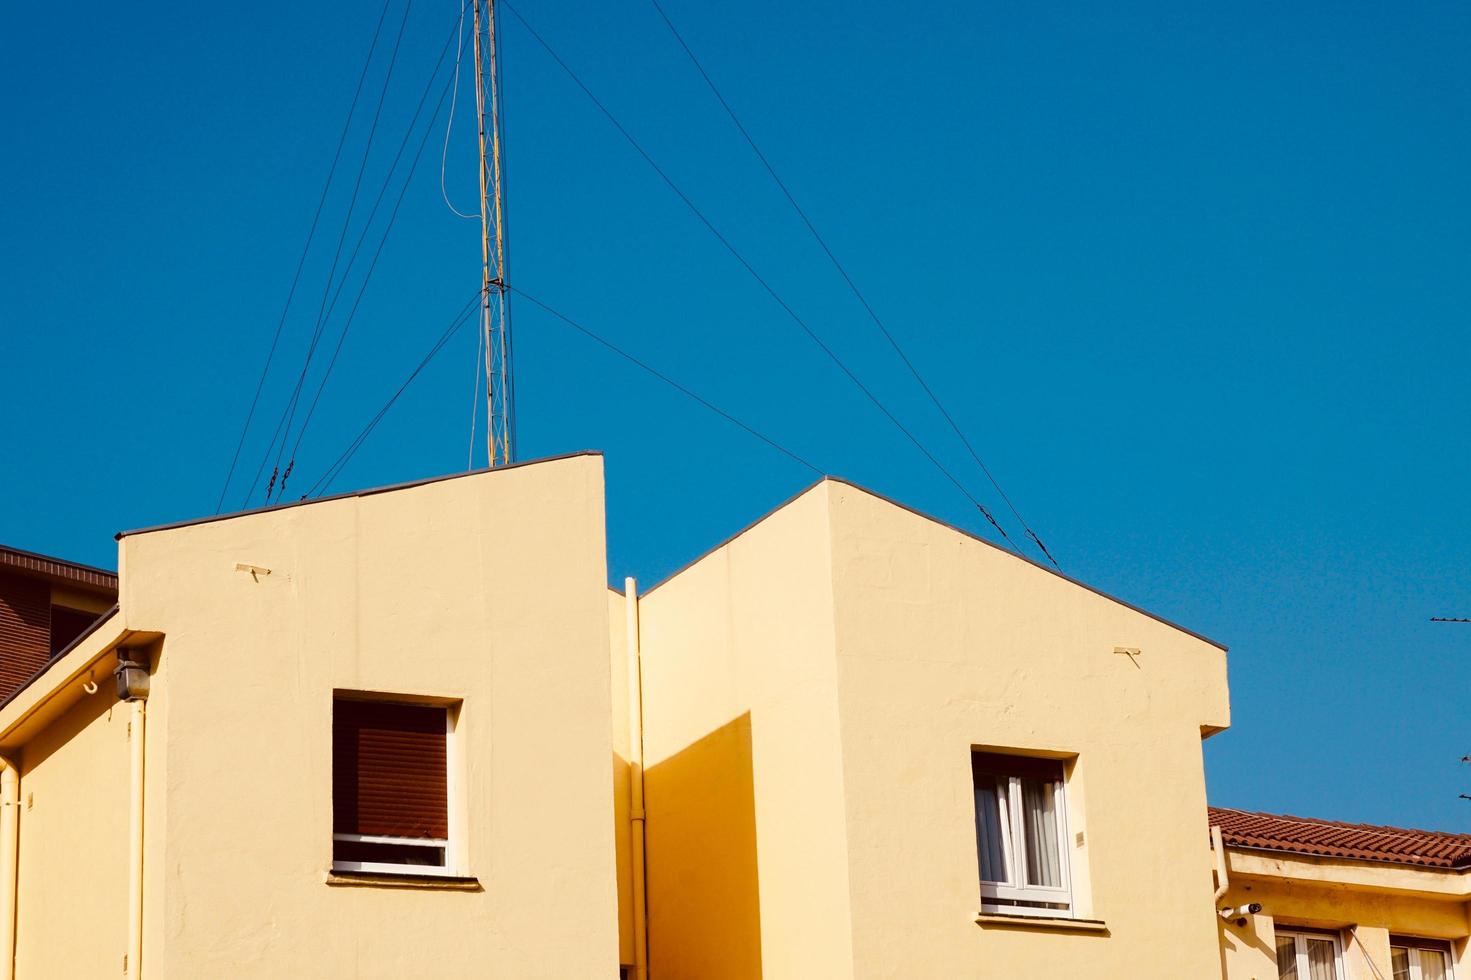 tv-antenne op een dak van een huis foto